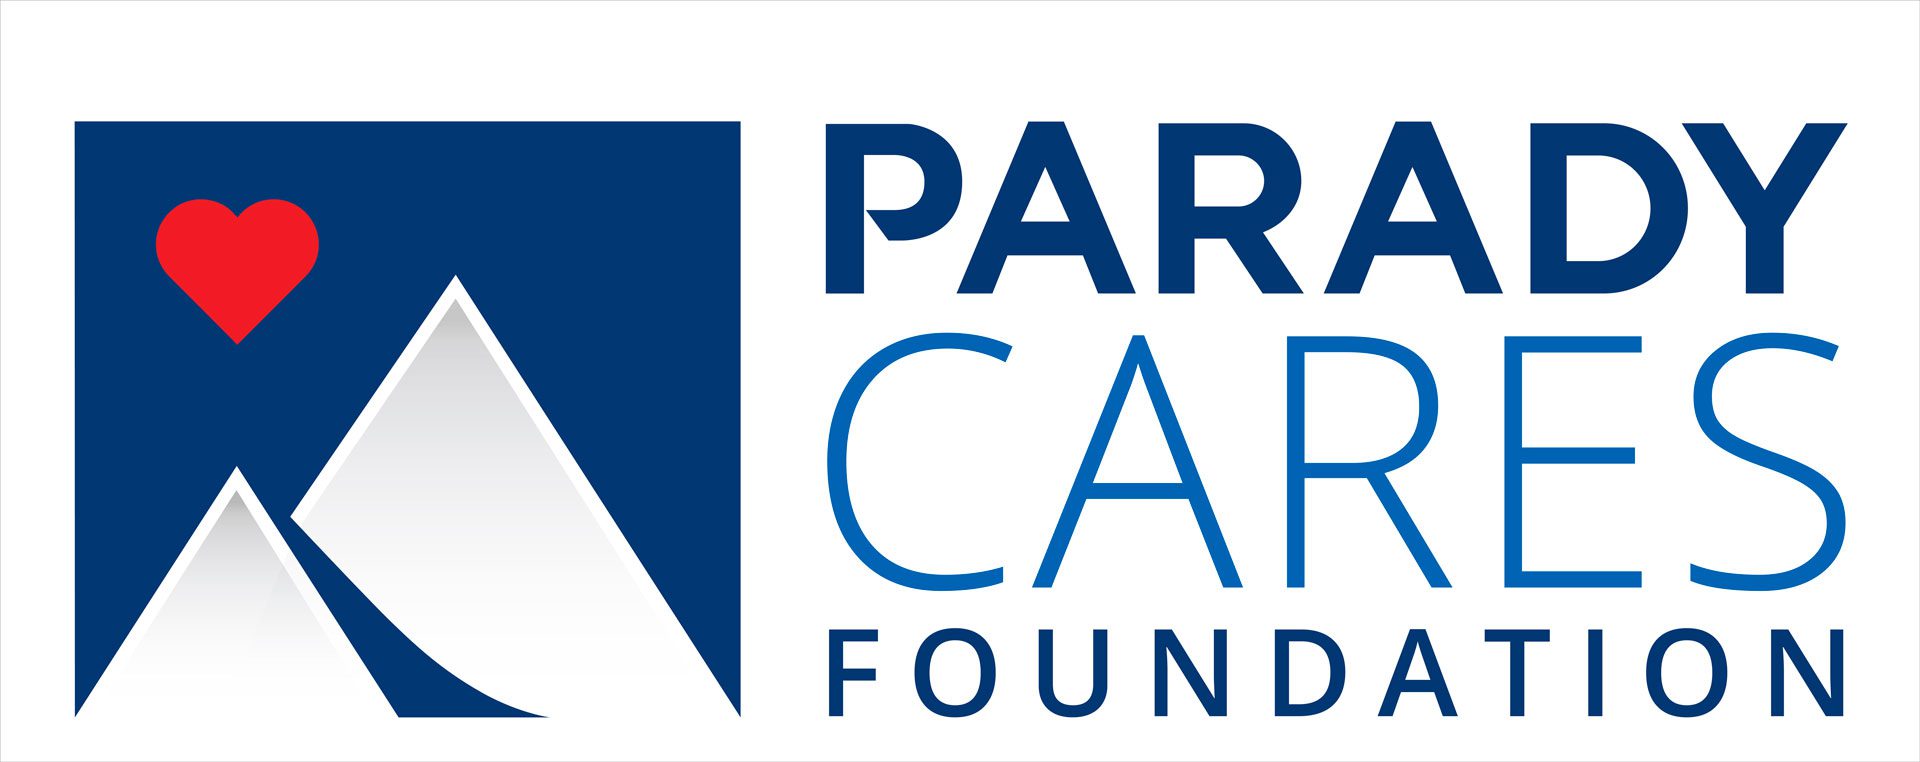 The Parady Cares Foundation